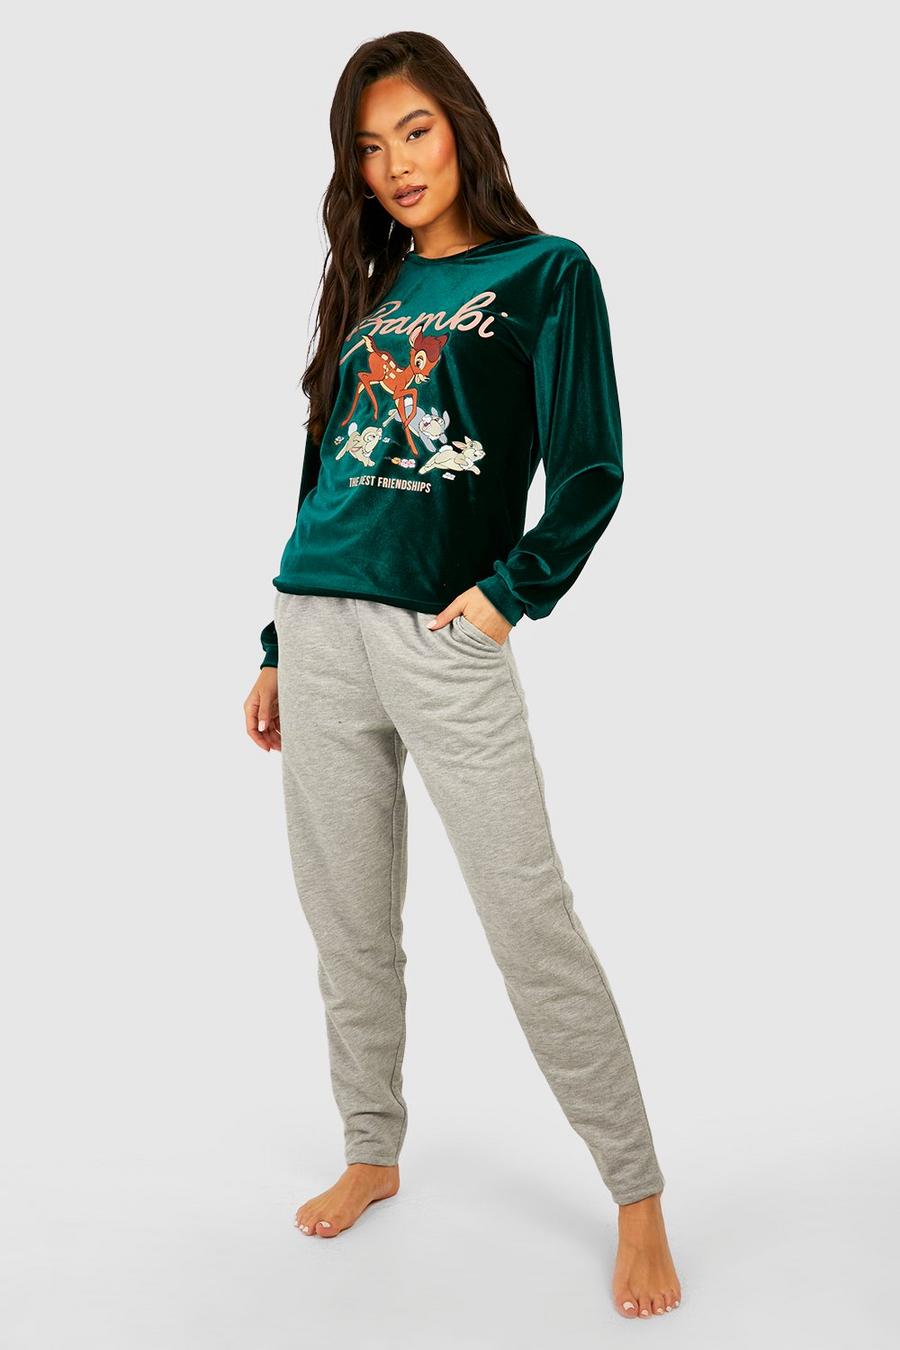 Green Disney Fleece Loungewear Sweatshirt & Trouser Set